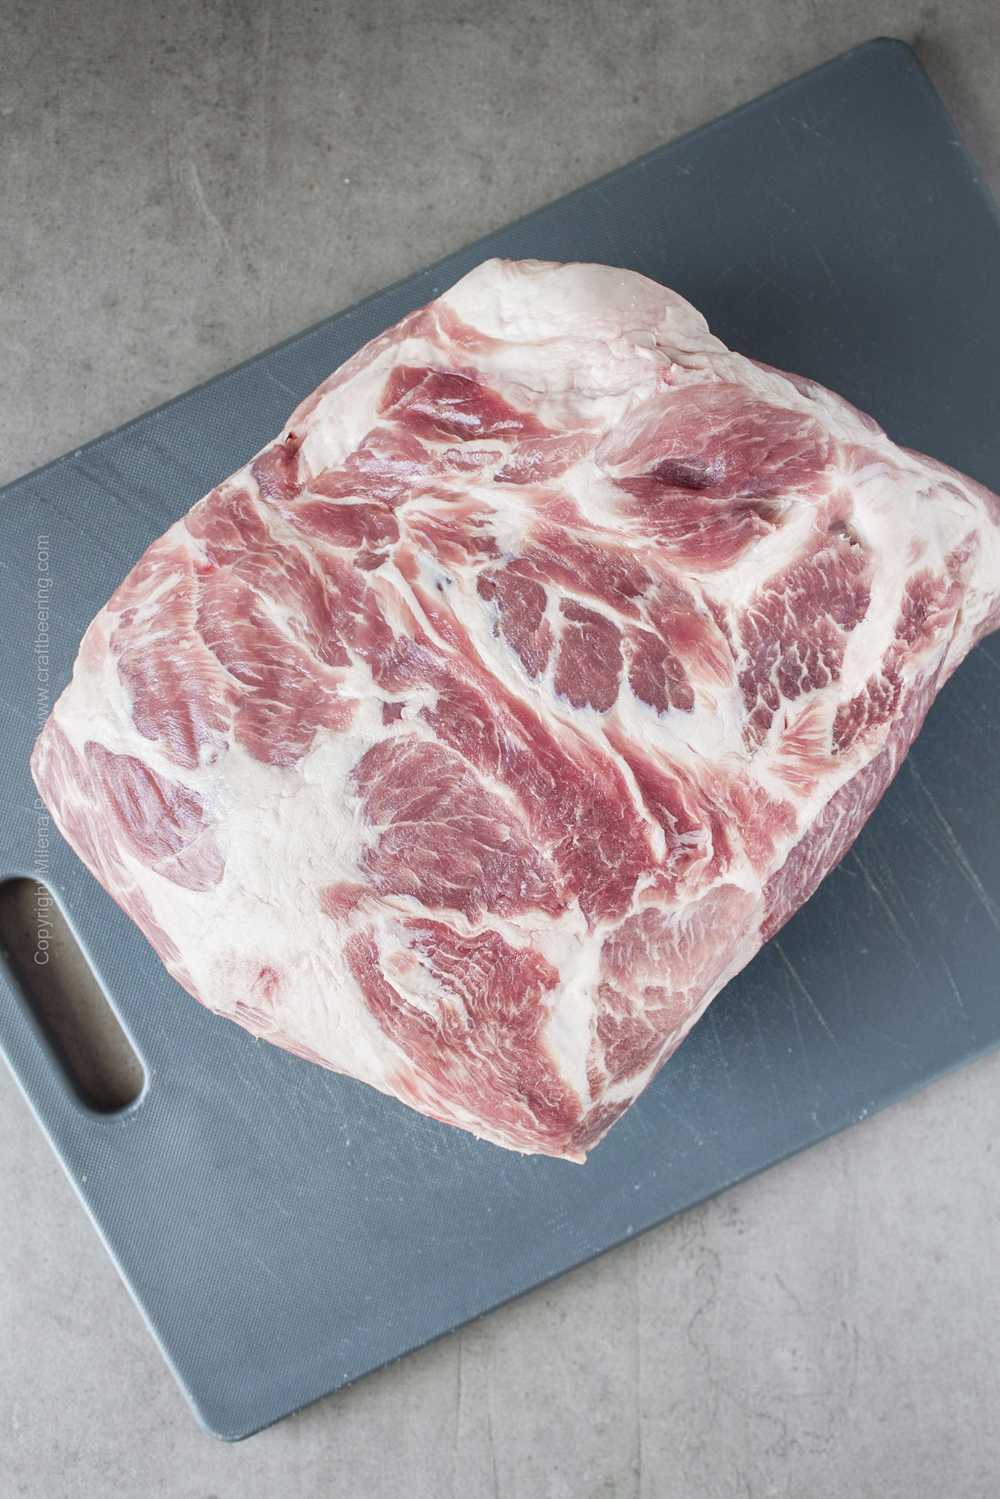 Rauwe schouderham die klaar is voor de steak.